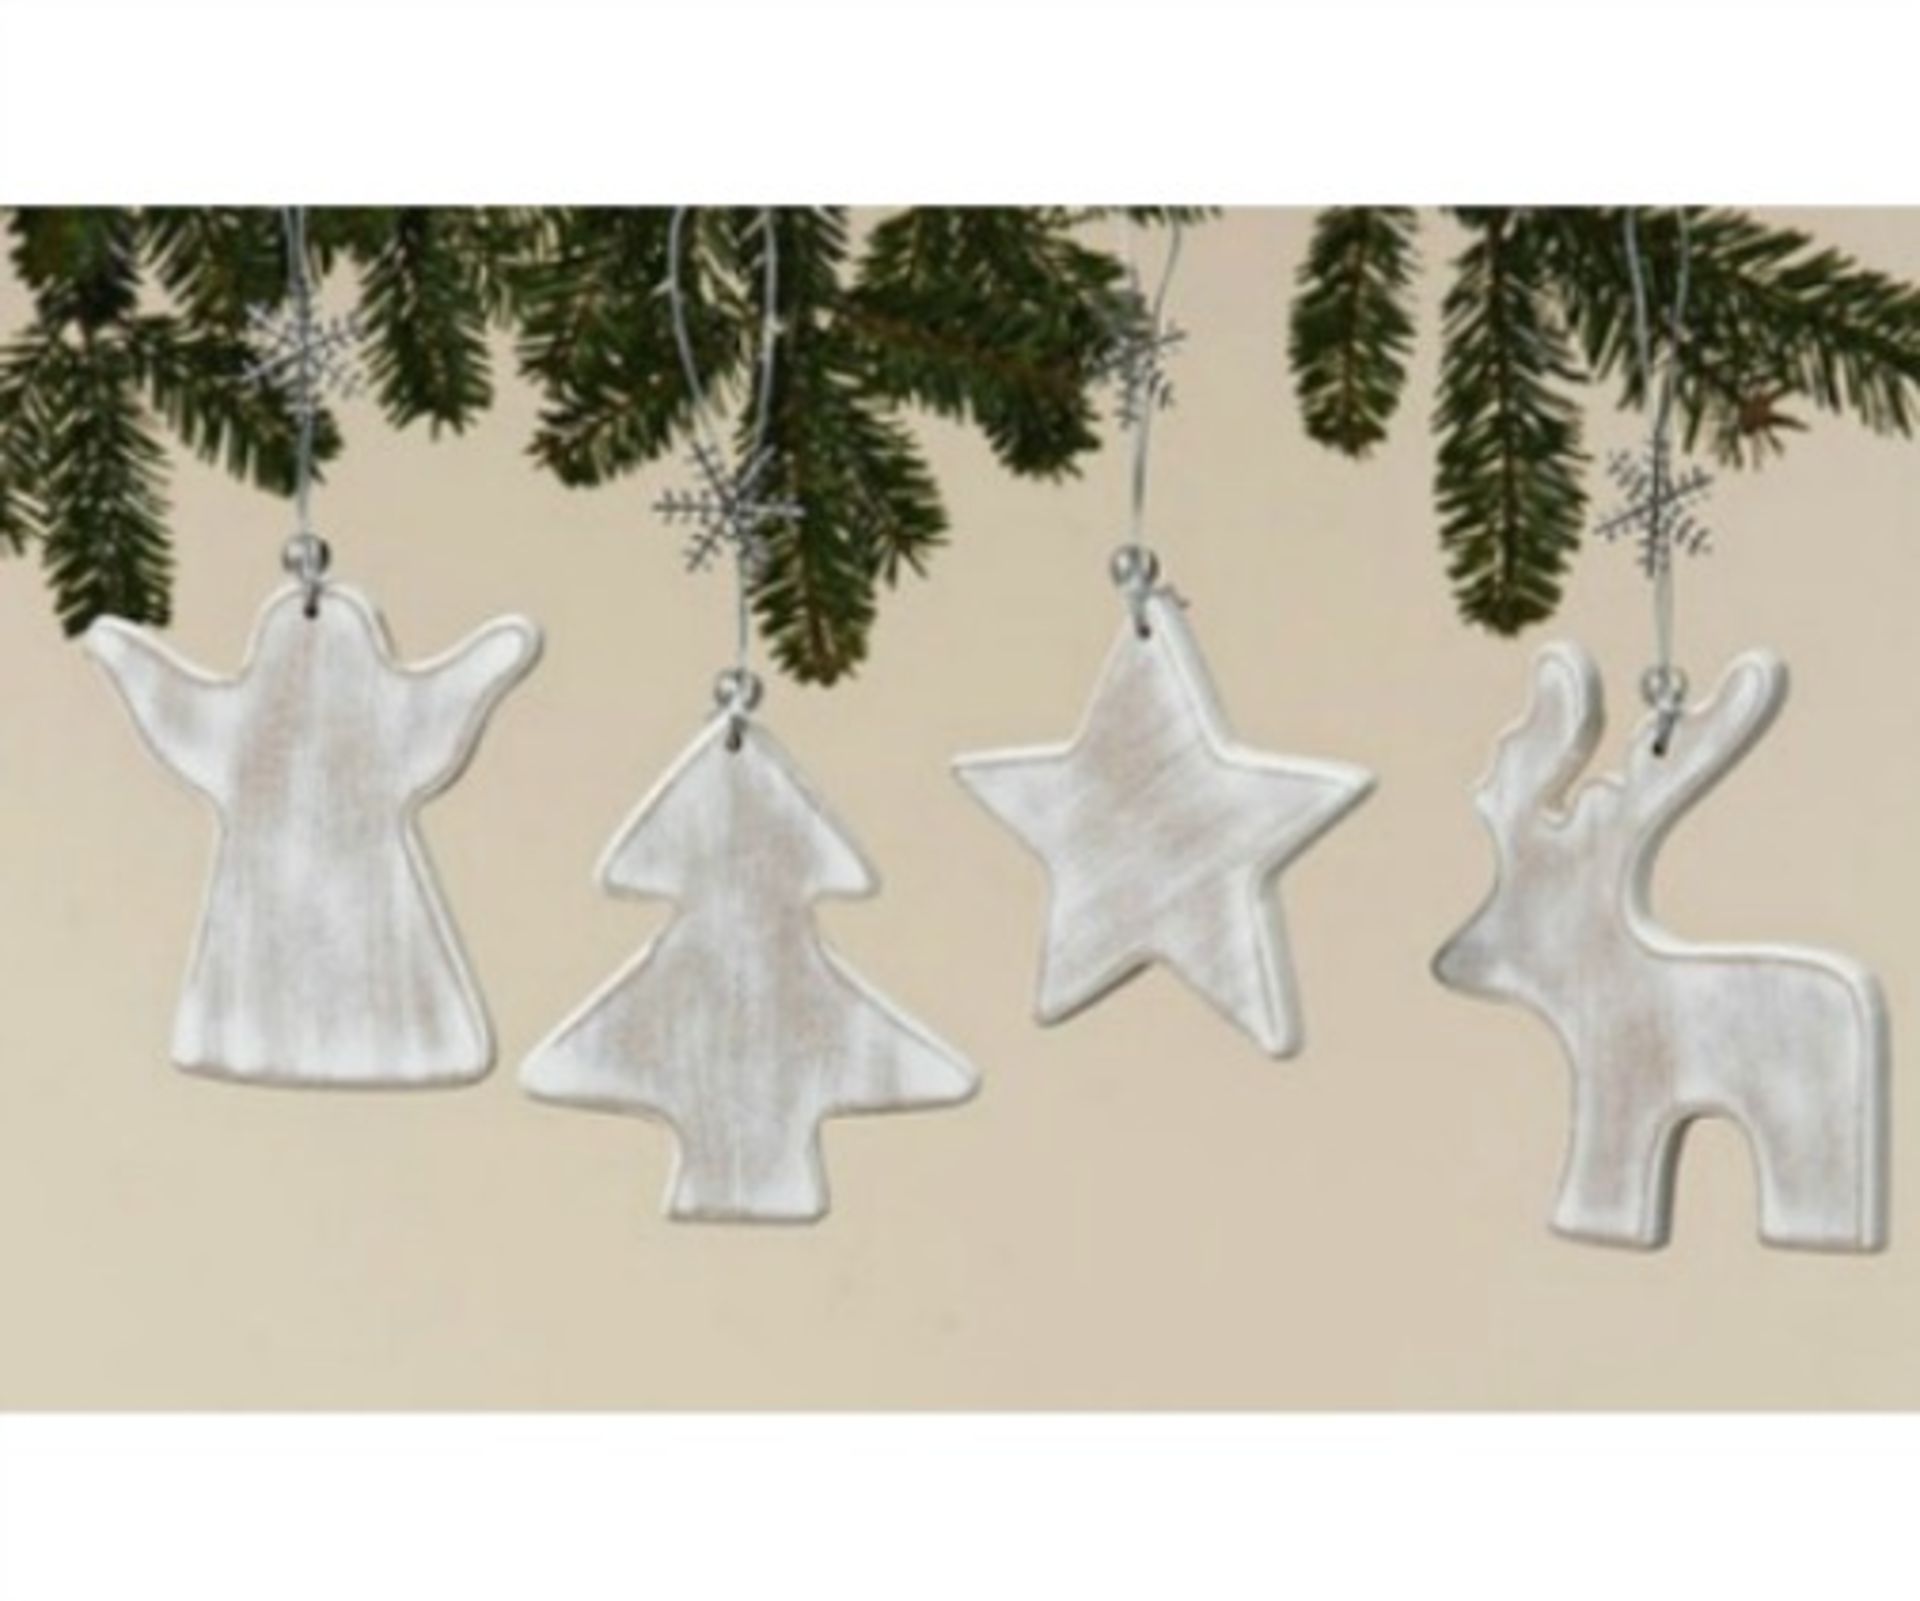 175 x White washed wood christmas tree decoration